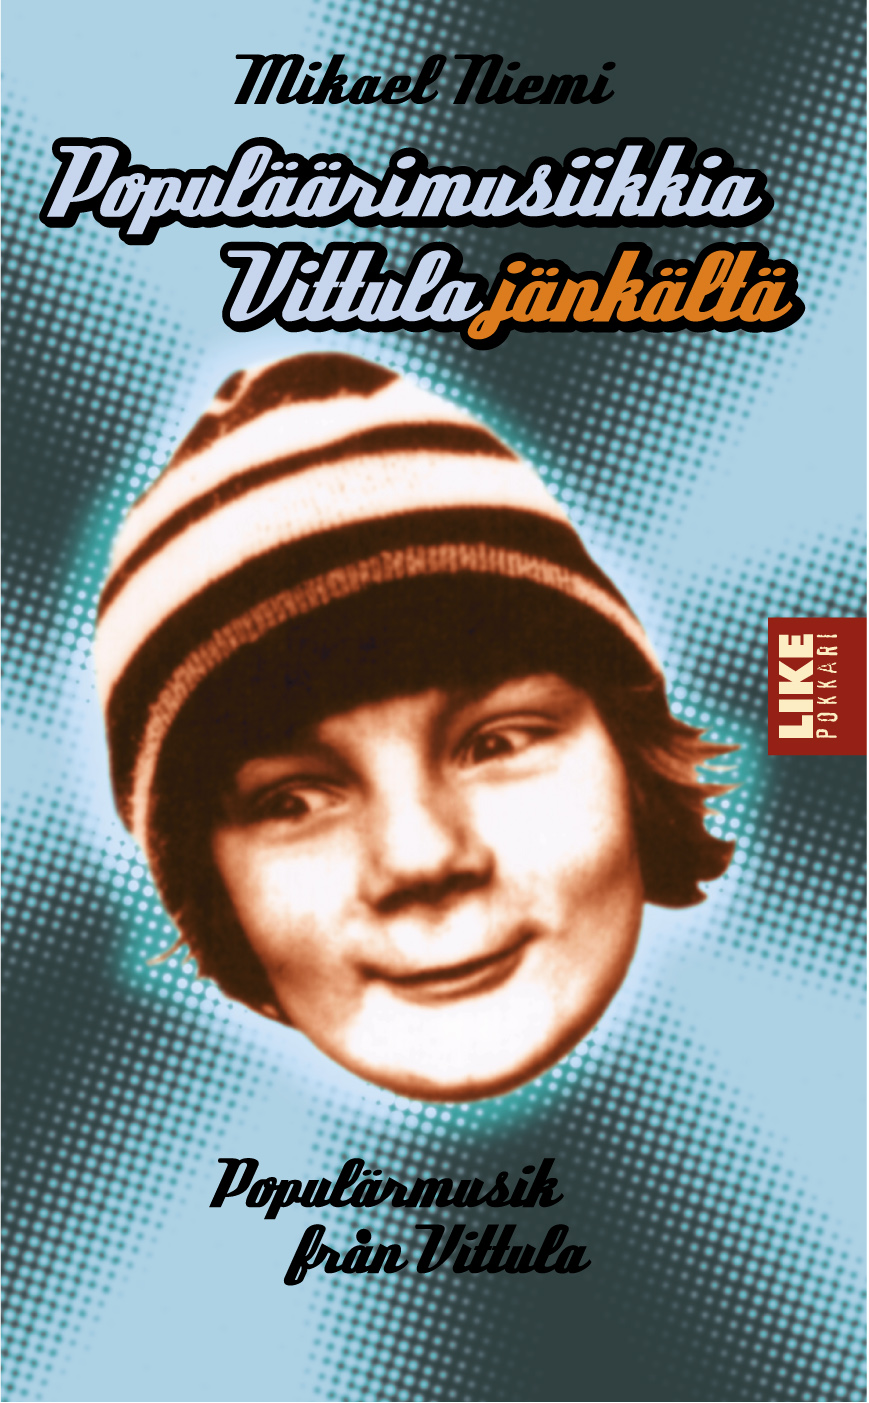 Mikael Niemi, Outi Menna: Populäärimusiikkia Vittulajänkältä (Paperback, Finnish language, 1999, LIKE)